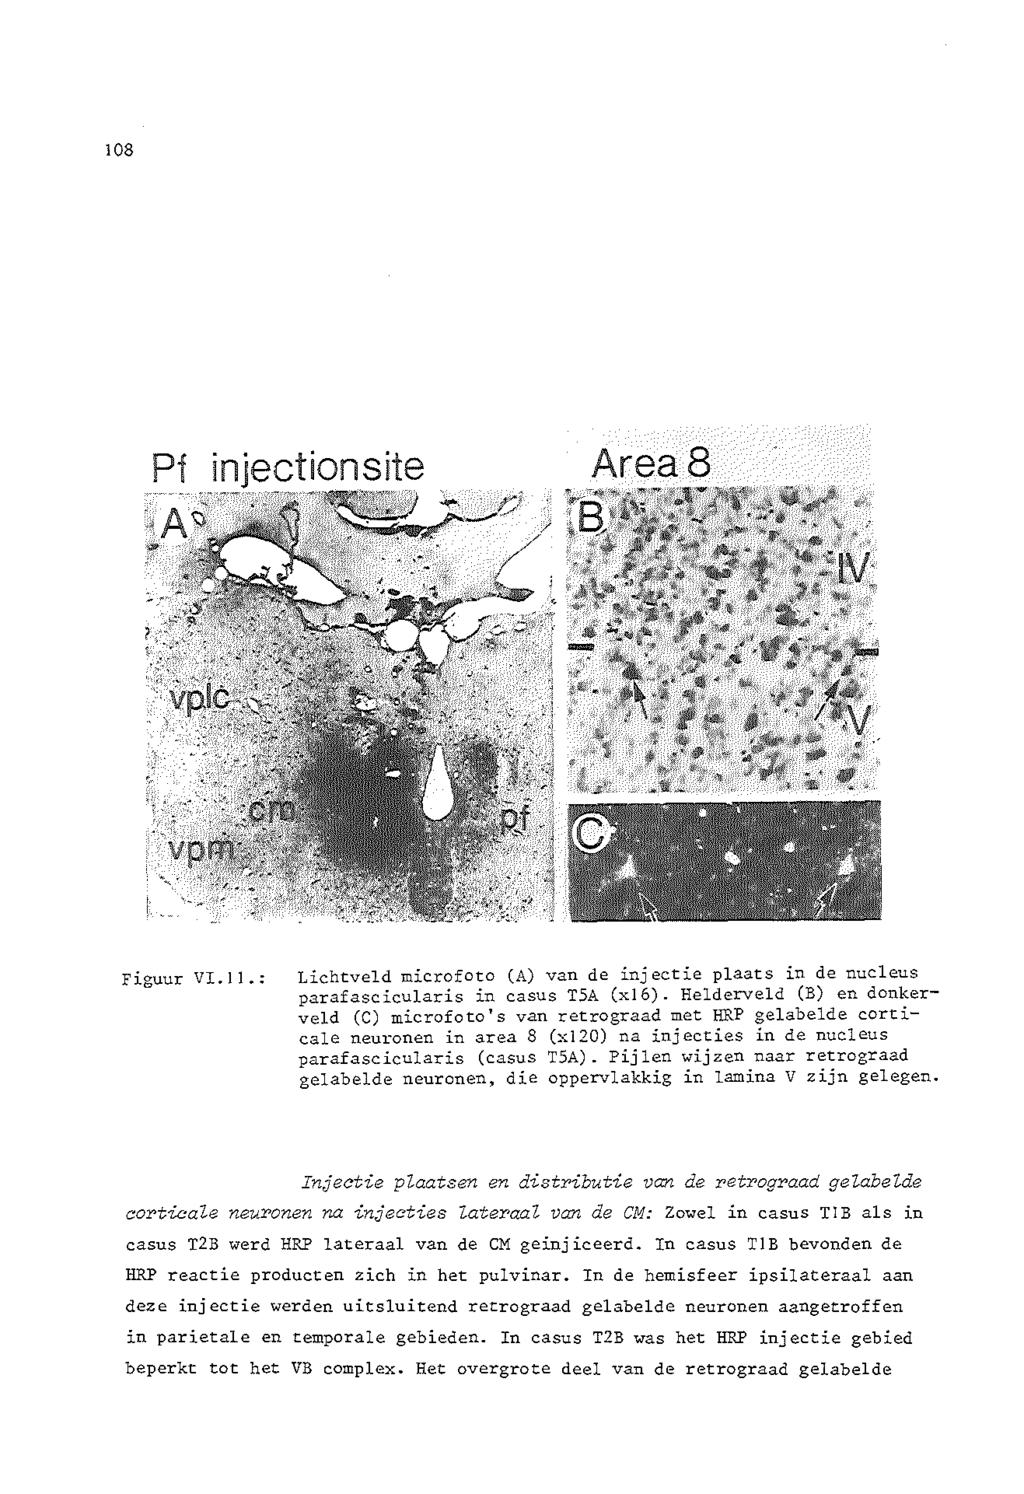 108 Pf injectionsite Area8 Figuur VI. II.: Lichtveld microfoto (A) van de injectie plaats in de nucleus parafascicularis in casus T5A (xl6).